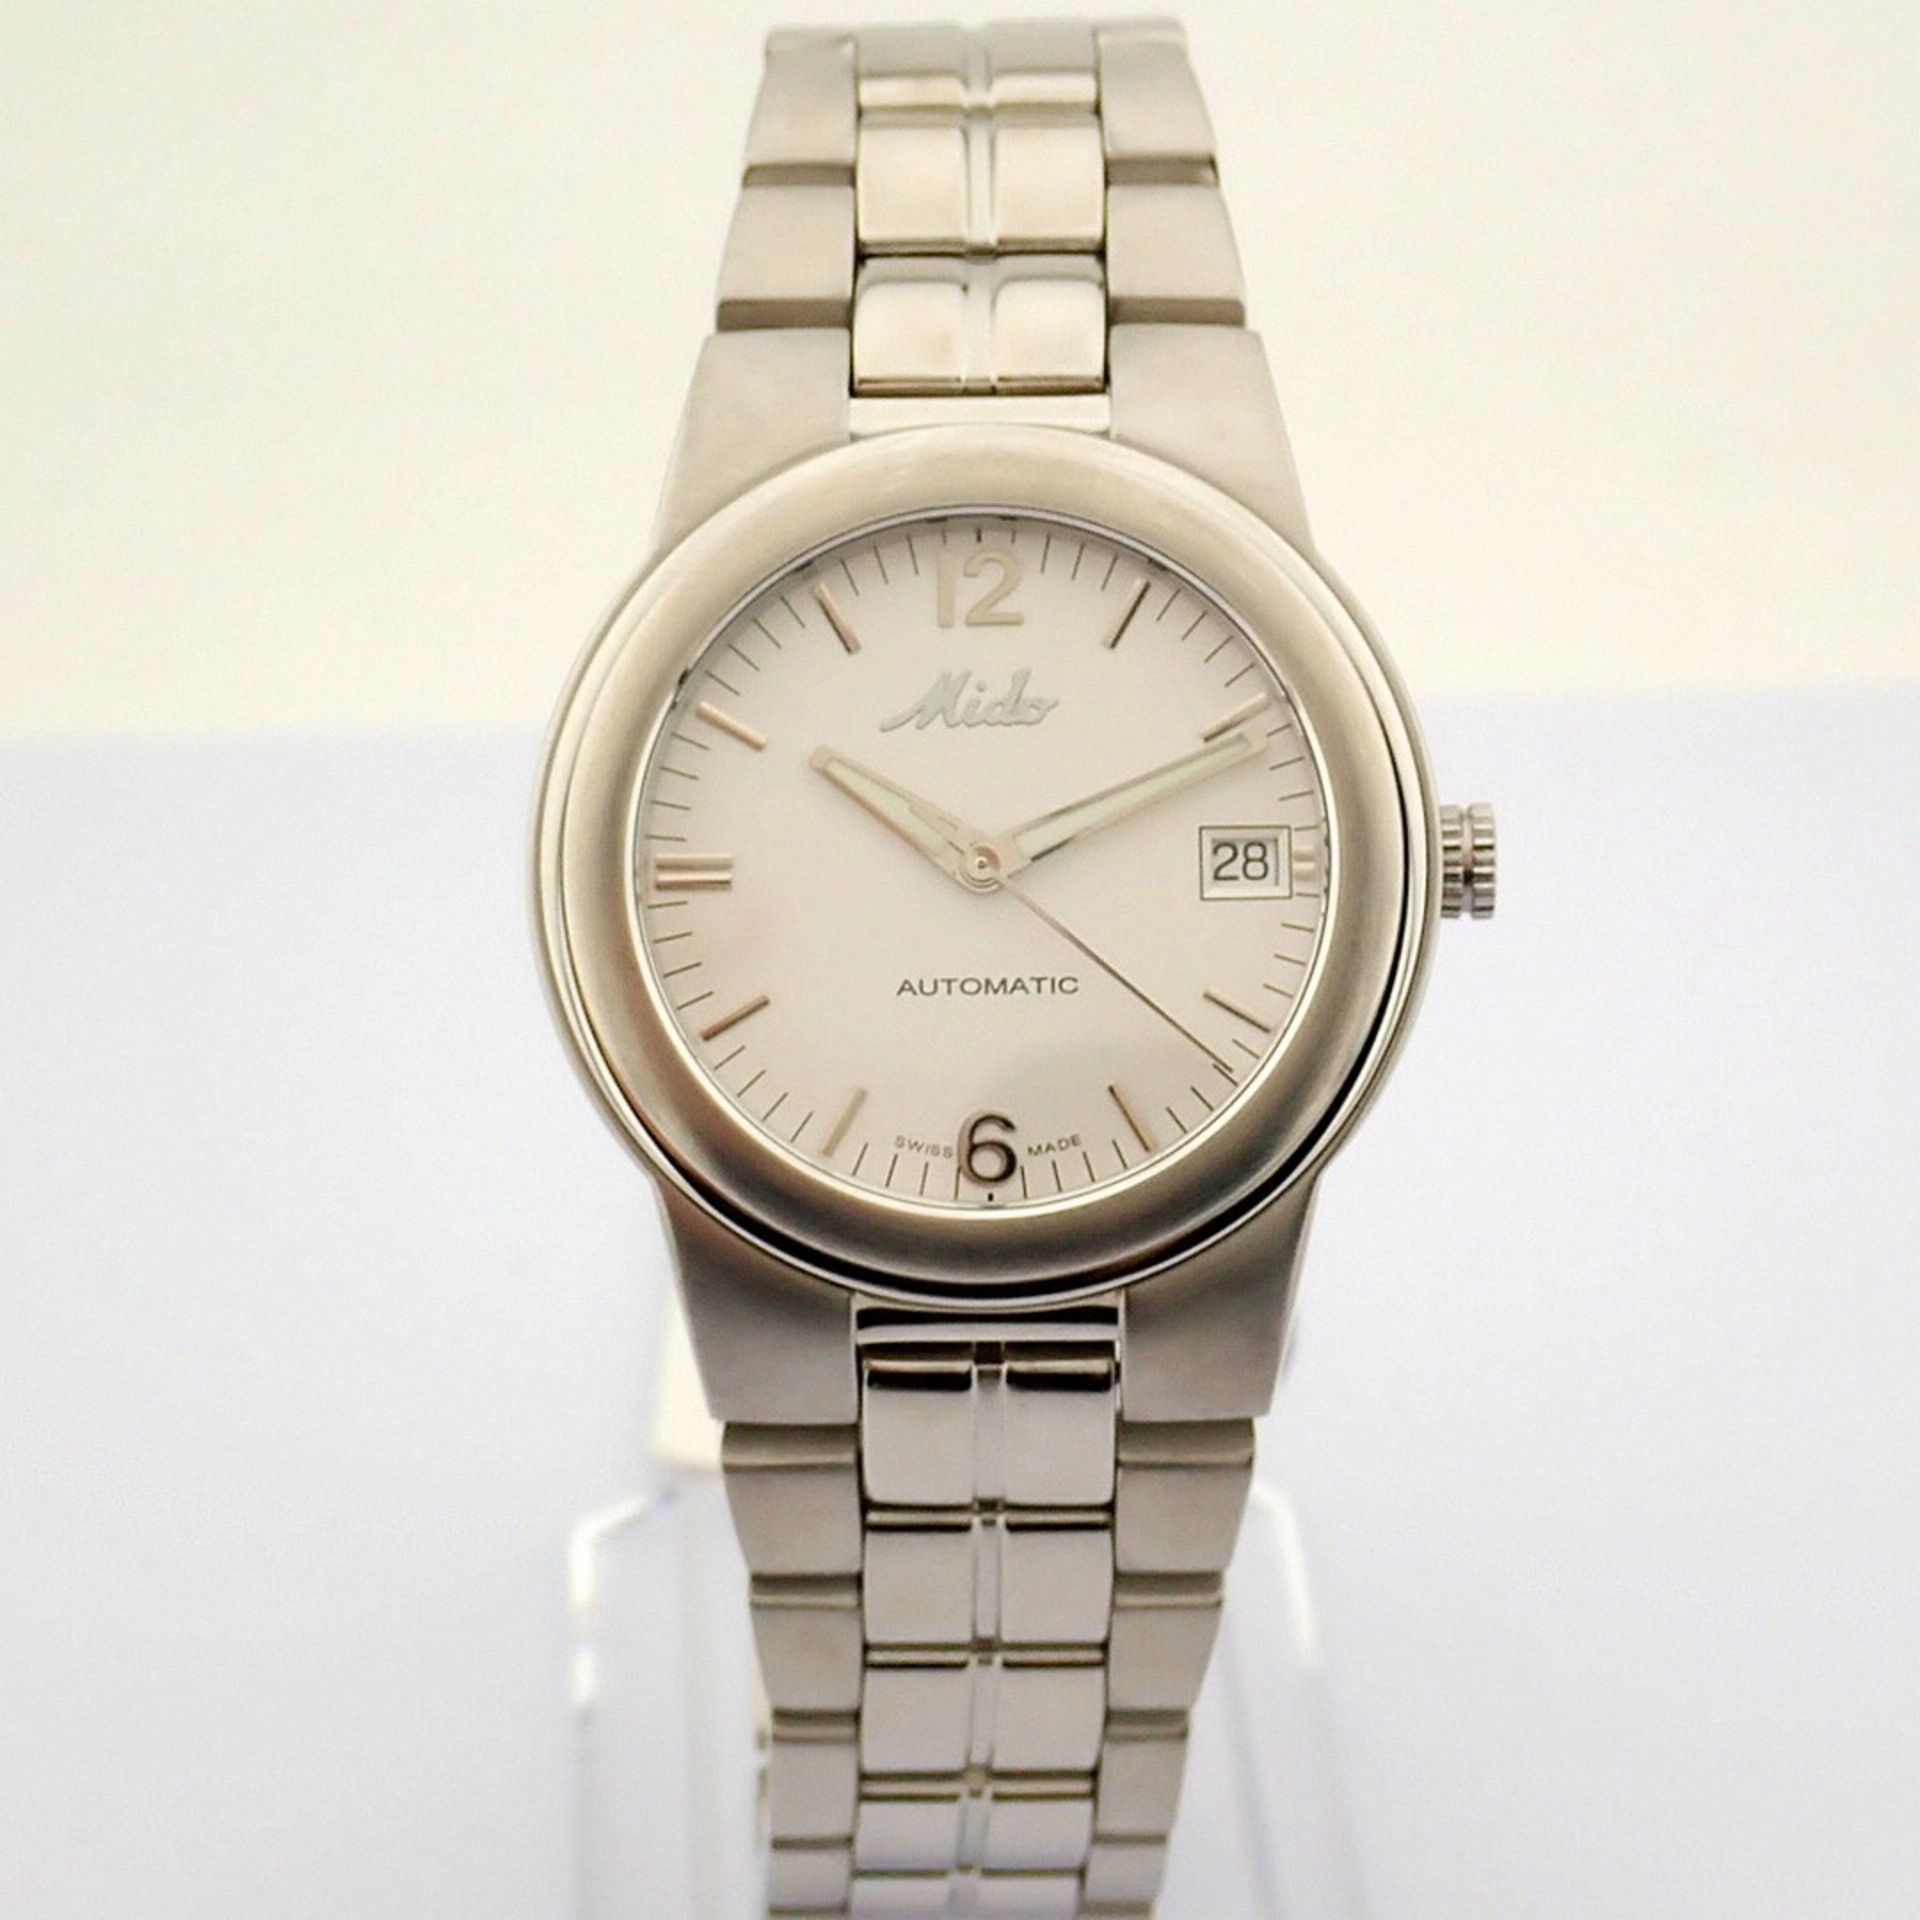 Mido / Ocean Star Aquadura (Brand New) - Gentlemen's Steel Wristwatch - Image 8 of 12